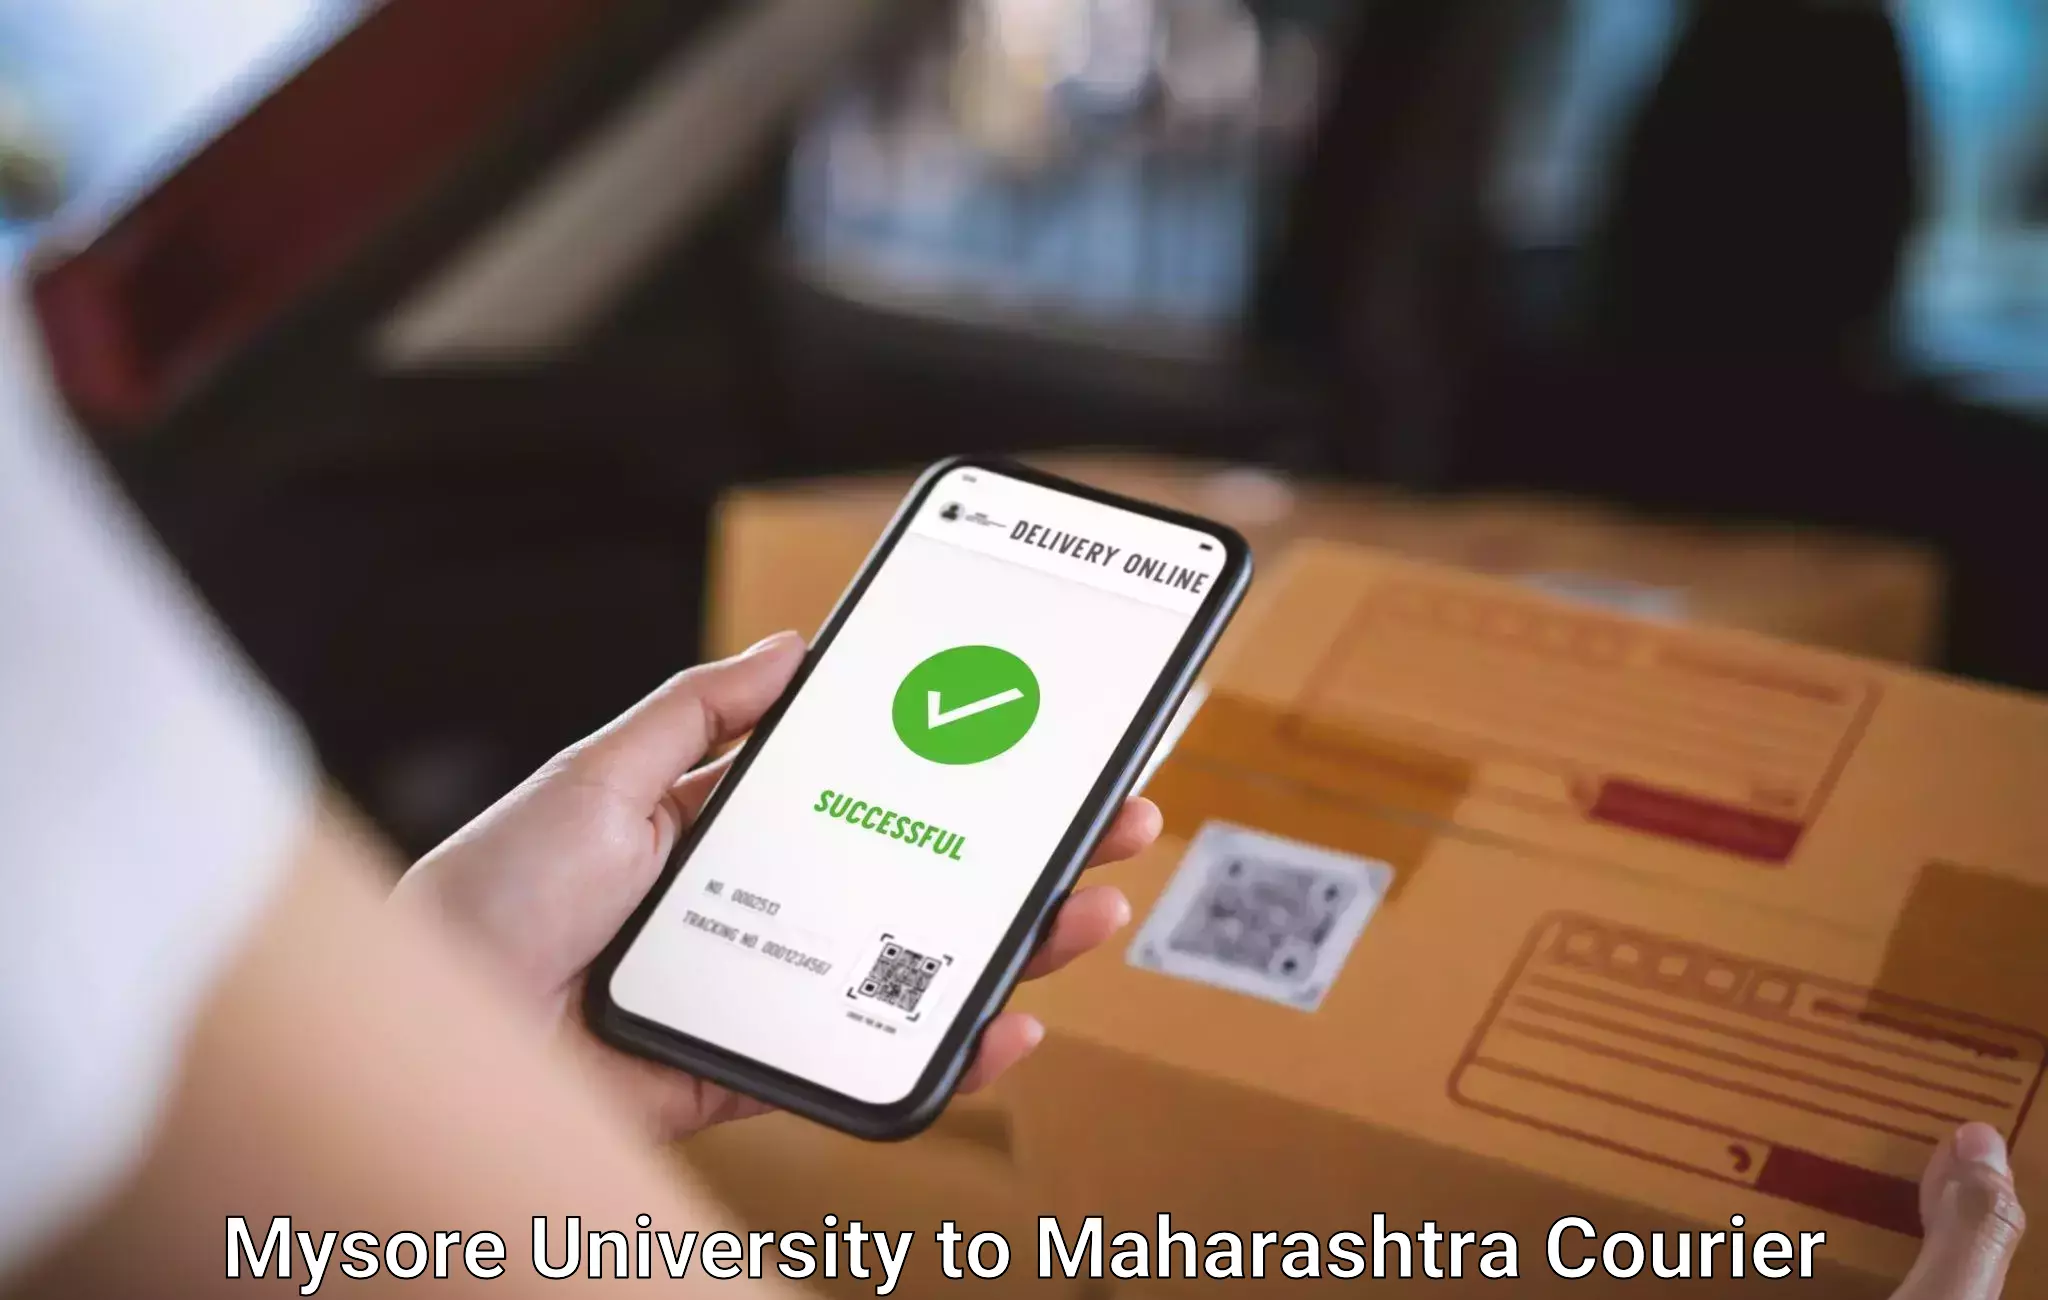 Overnight luggage courier Mysore University to Maharashtra